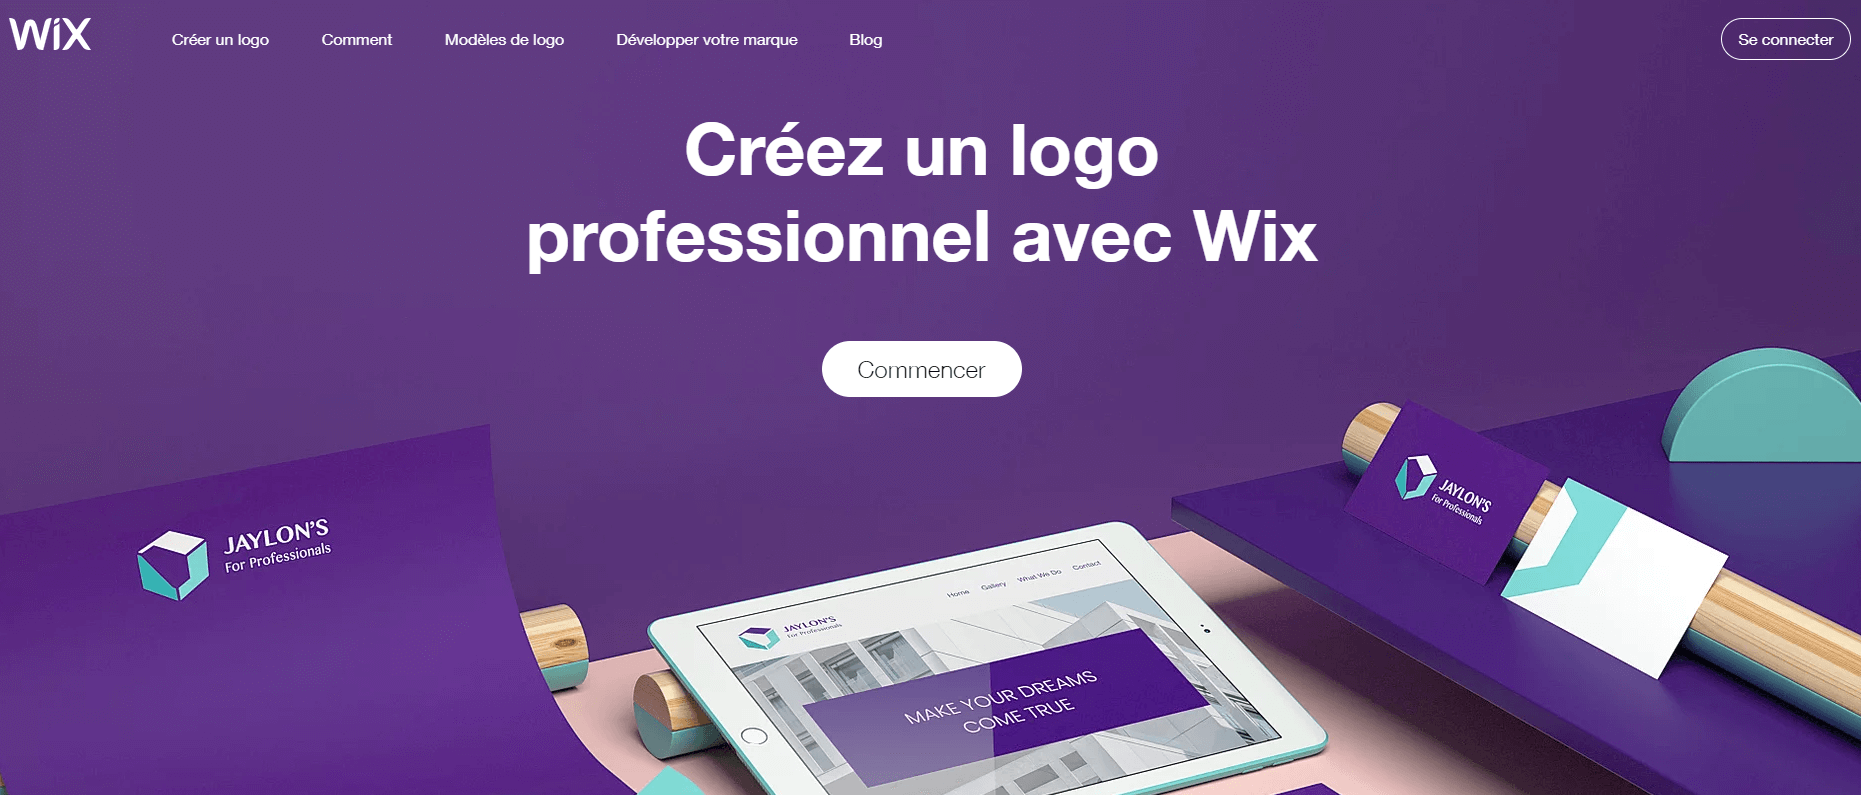 wix logo maker